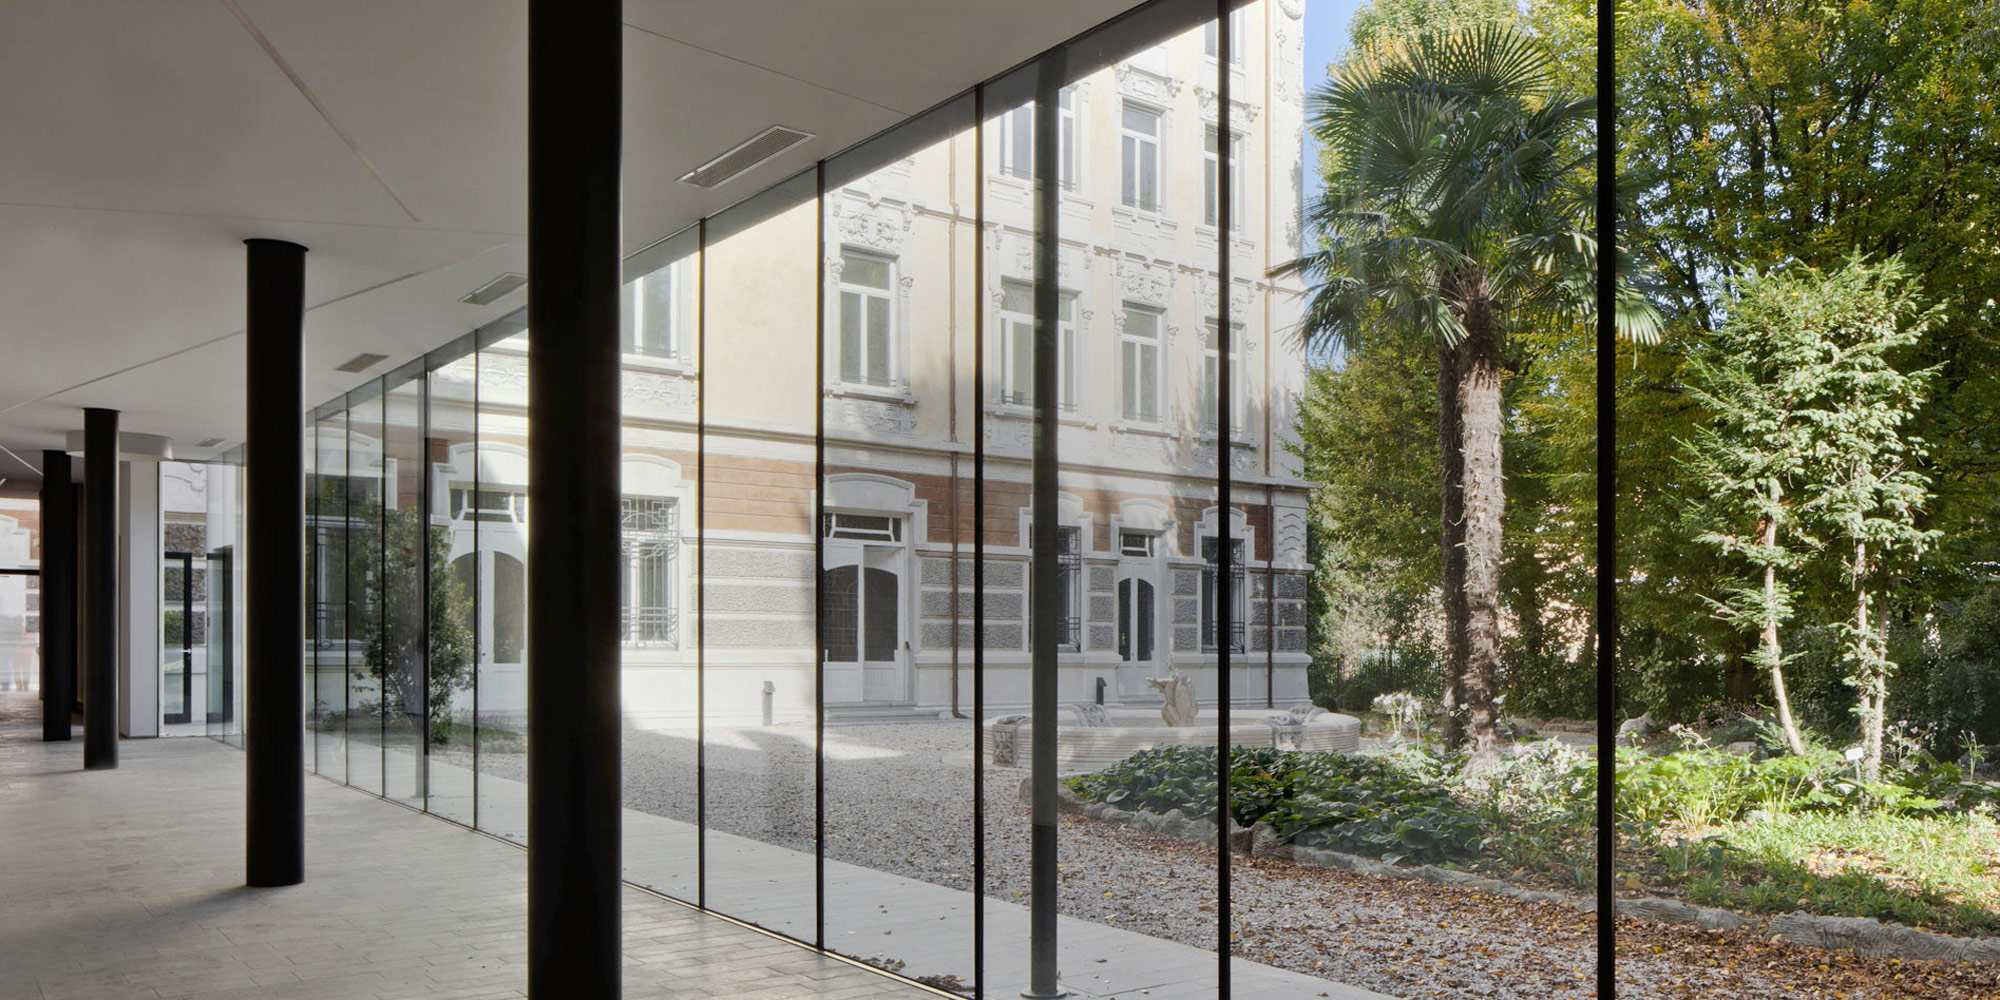 Carretta Serramenti realizzazione finestre in legno e alluminio per abitazioni e contract a zanè vicenza veneto italia